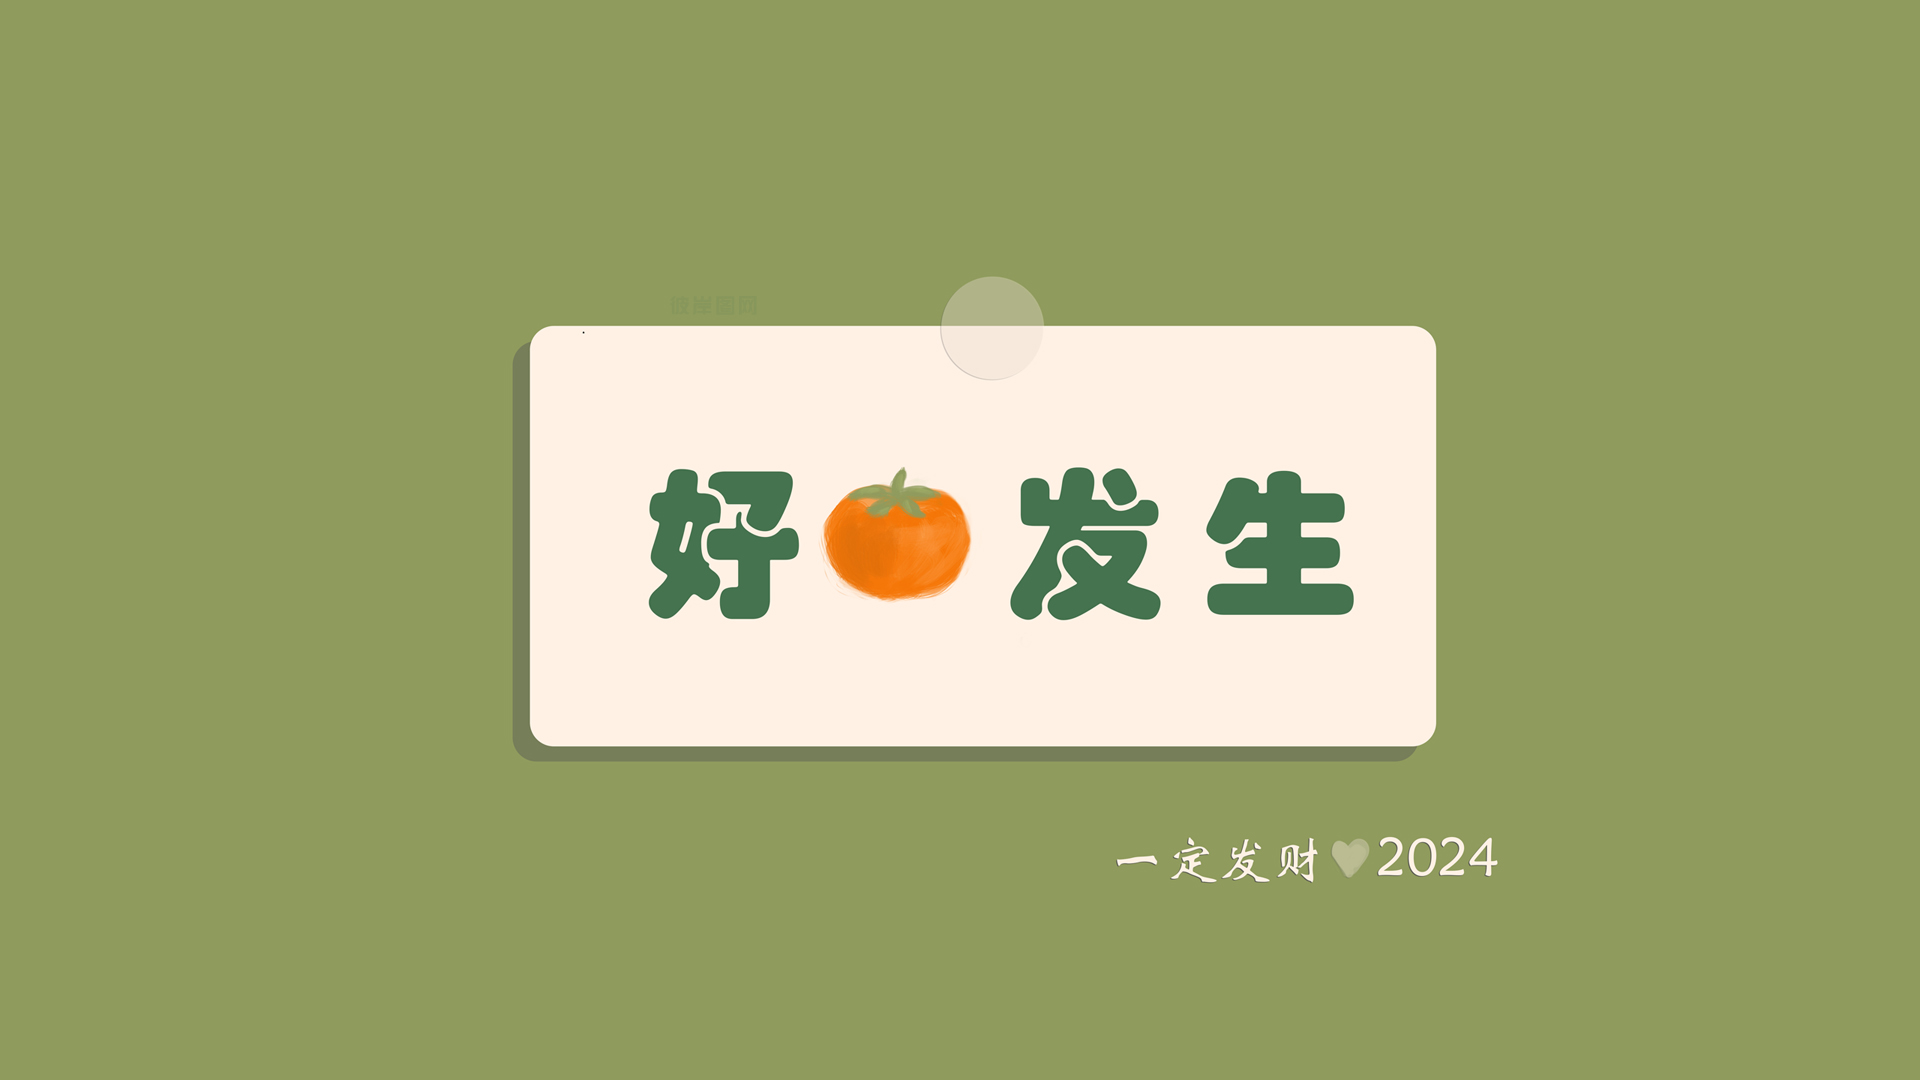 原创 好事发生 柿子2024桌面高清壁纸背景图